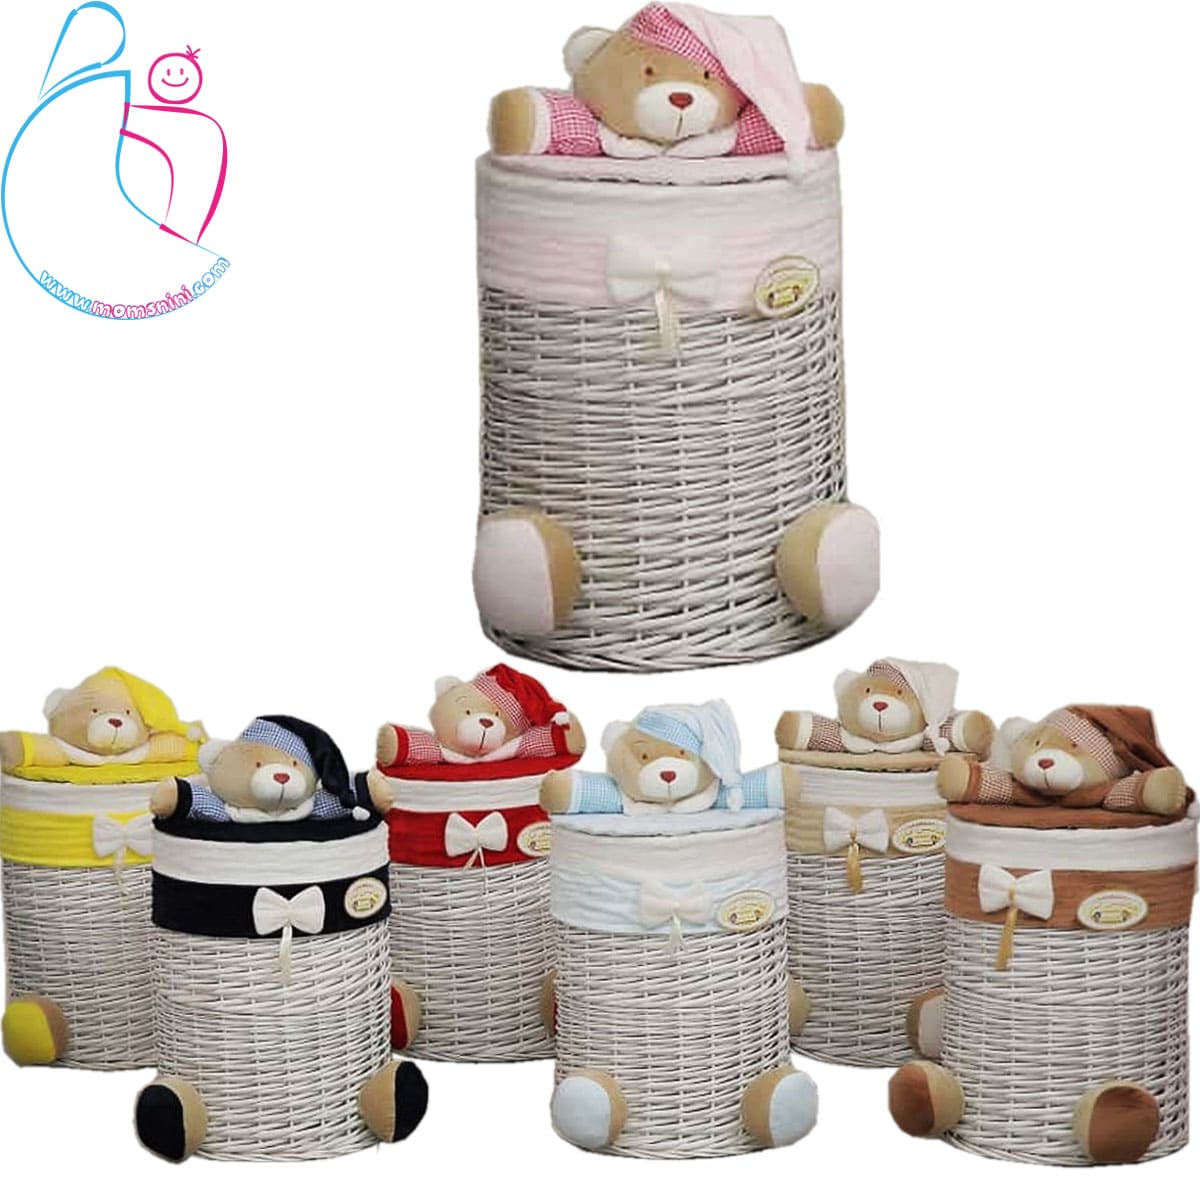 سبد لباس مدل خرسی تدی ( teddy bear decorated basket)